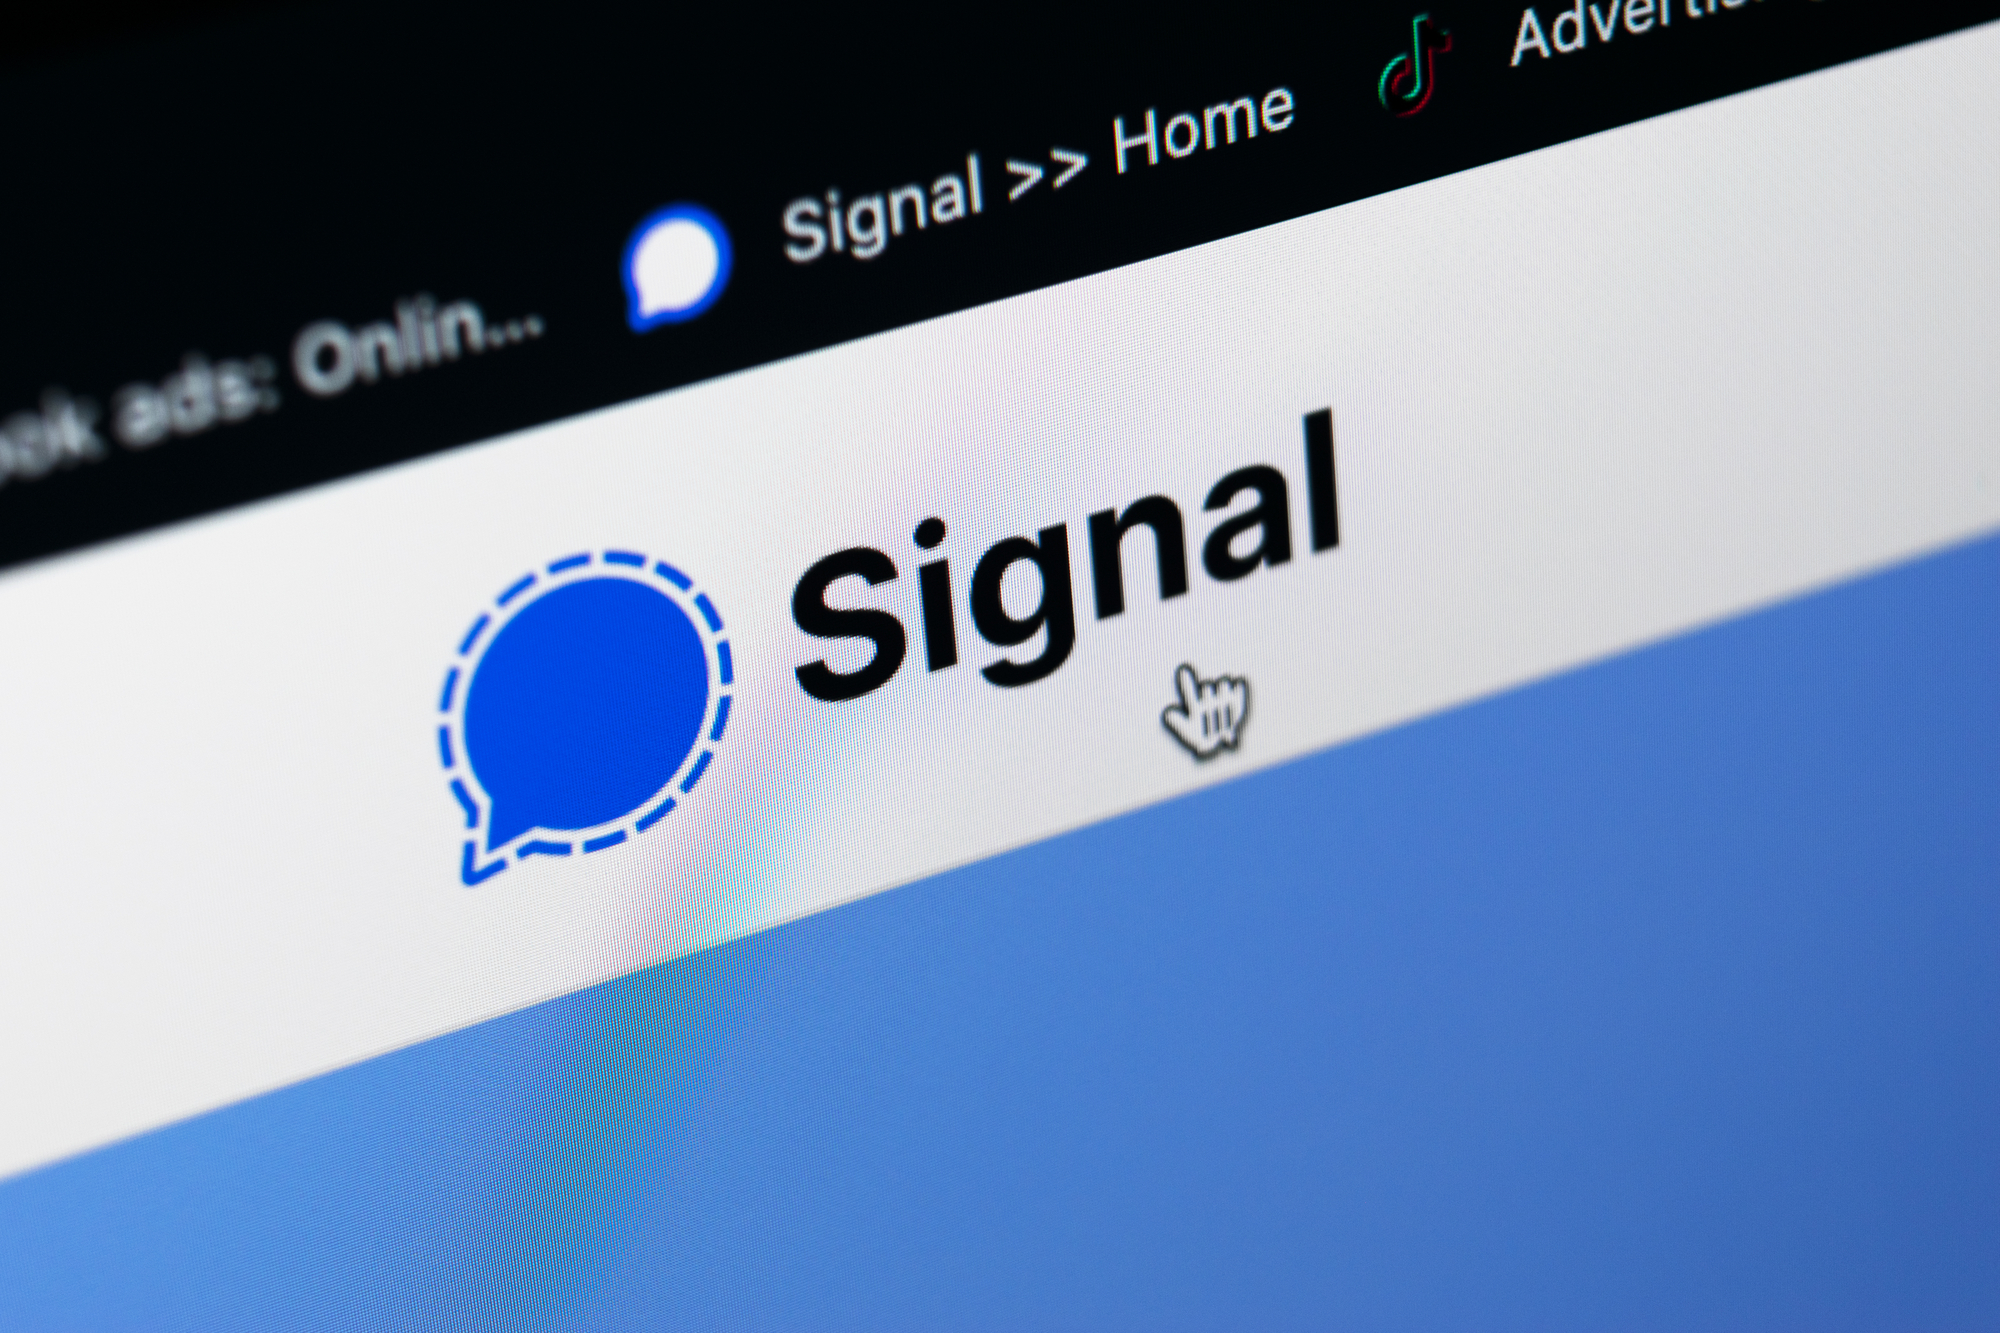 Das Signal-Messenger Logo auf einem Bildschirm